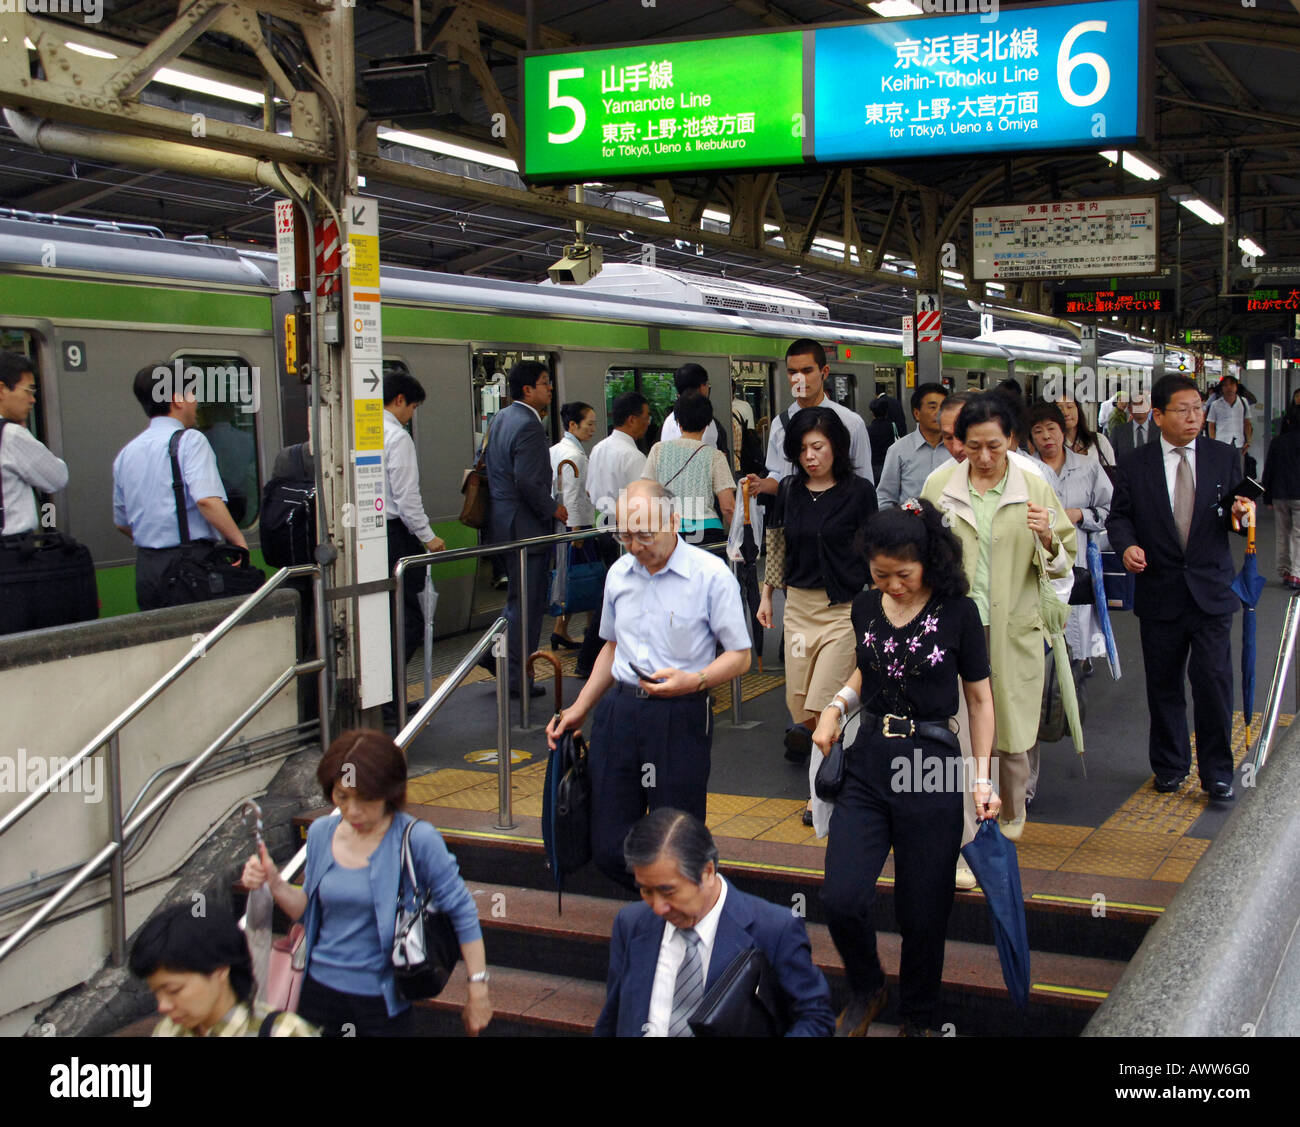 Tokyo passengers at Shimbashi subway station, Tokyo Japan Stock Photo